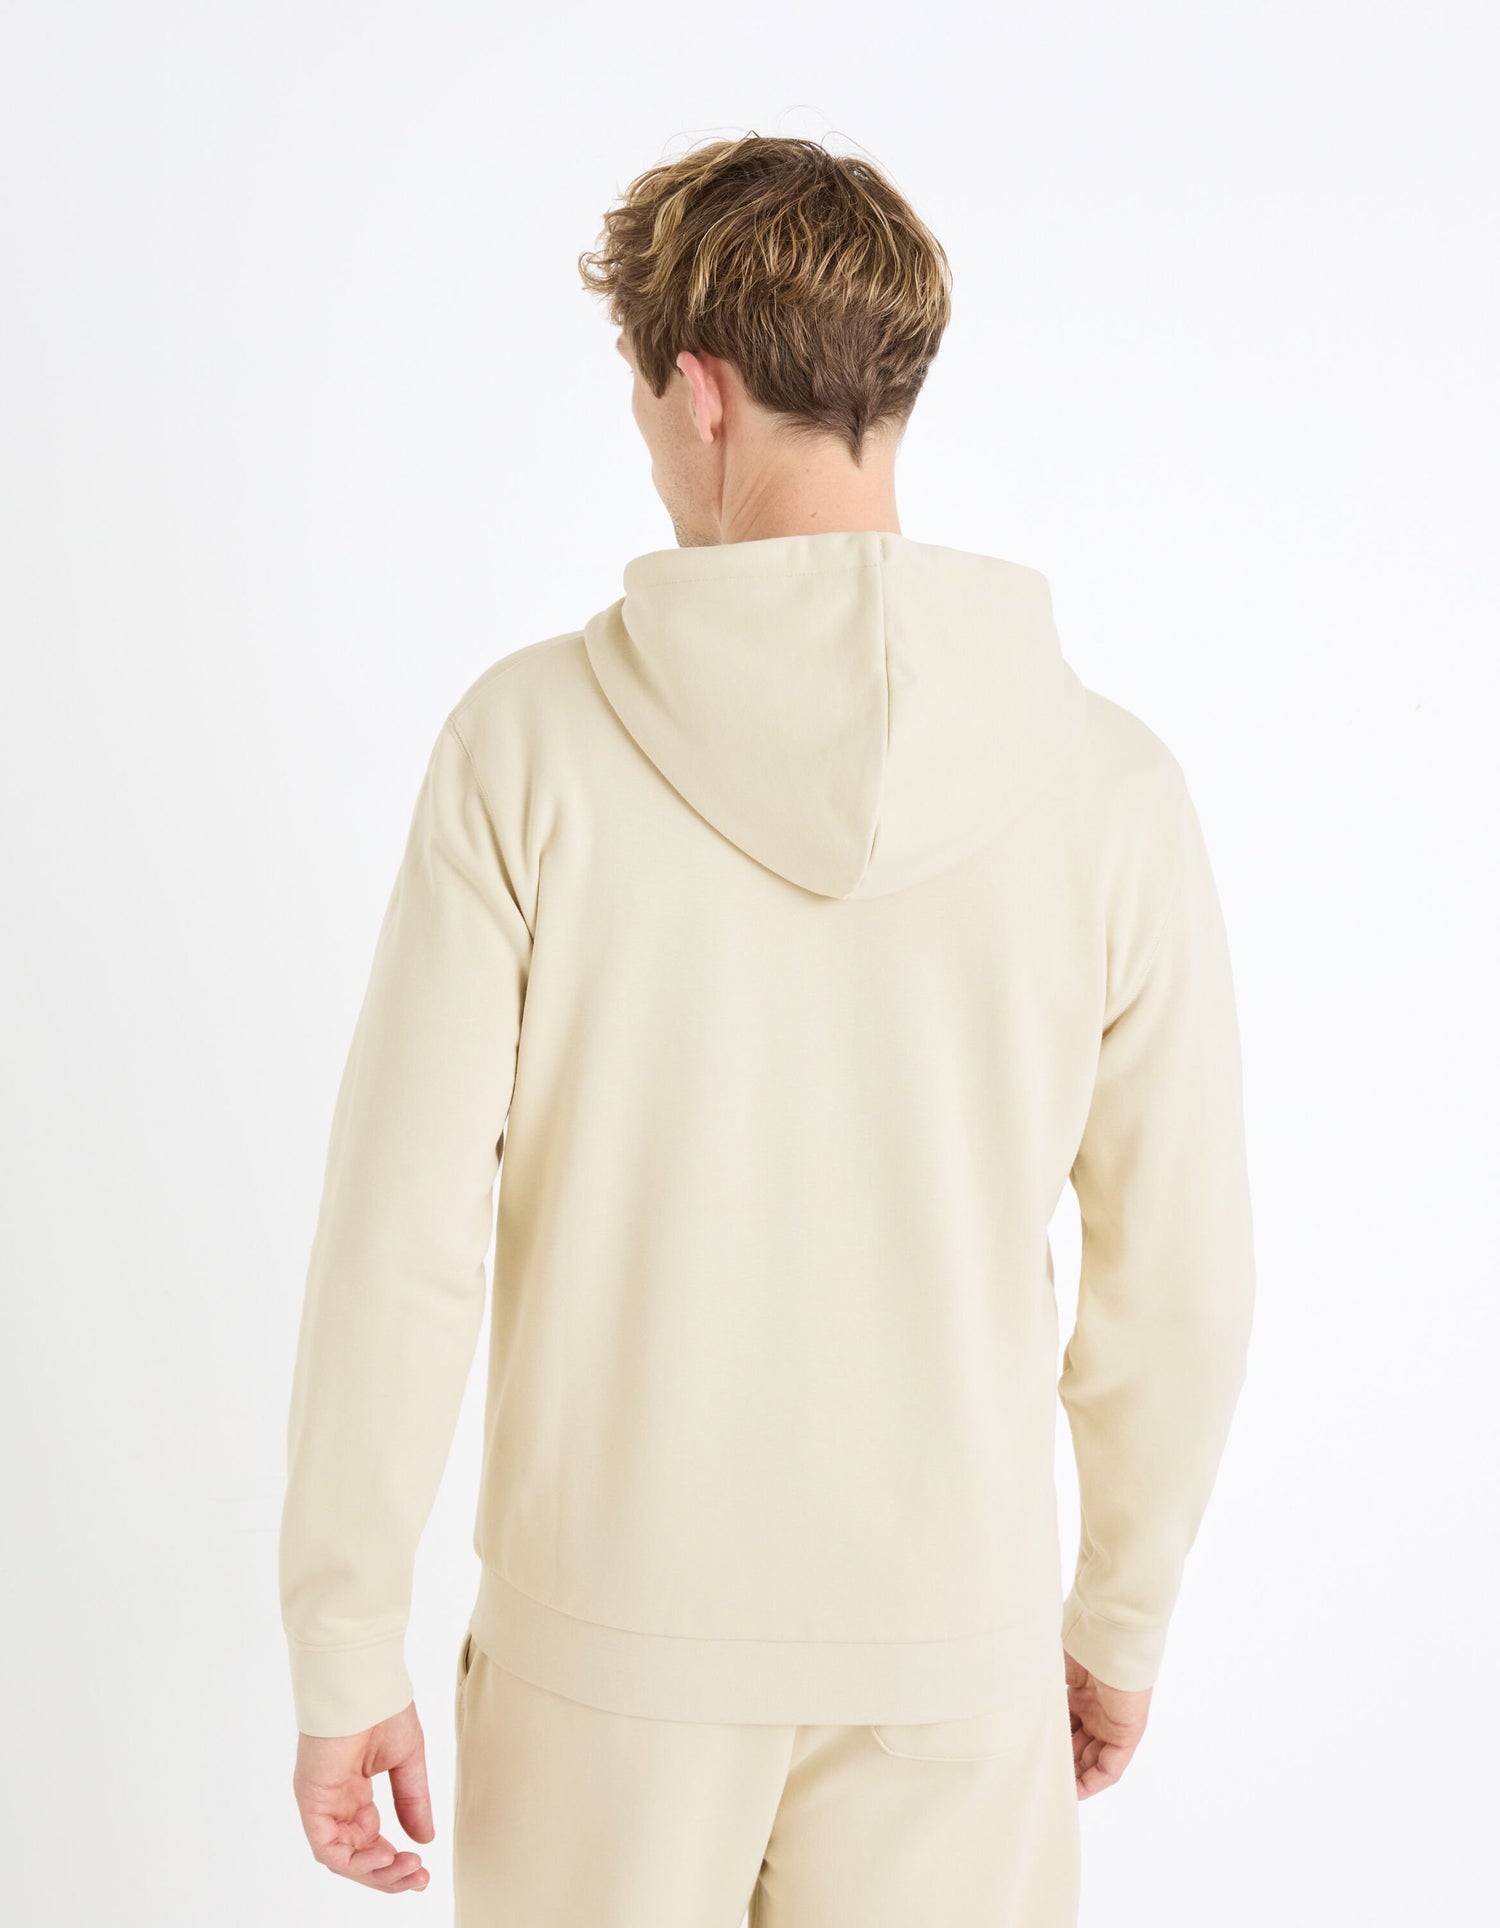 Zipped Hooded Sweatshirt 100% Cotton_FETHREE_BEIGE_04